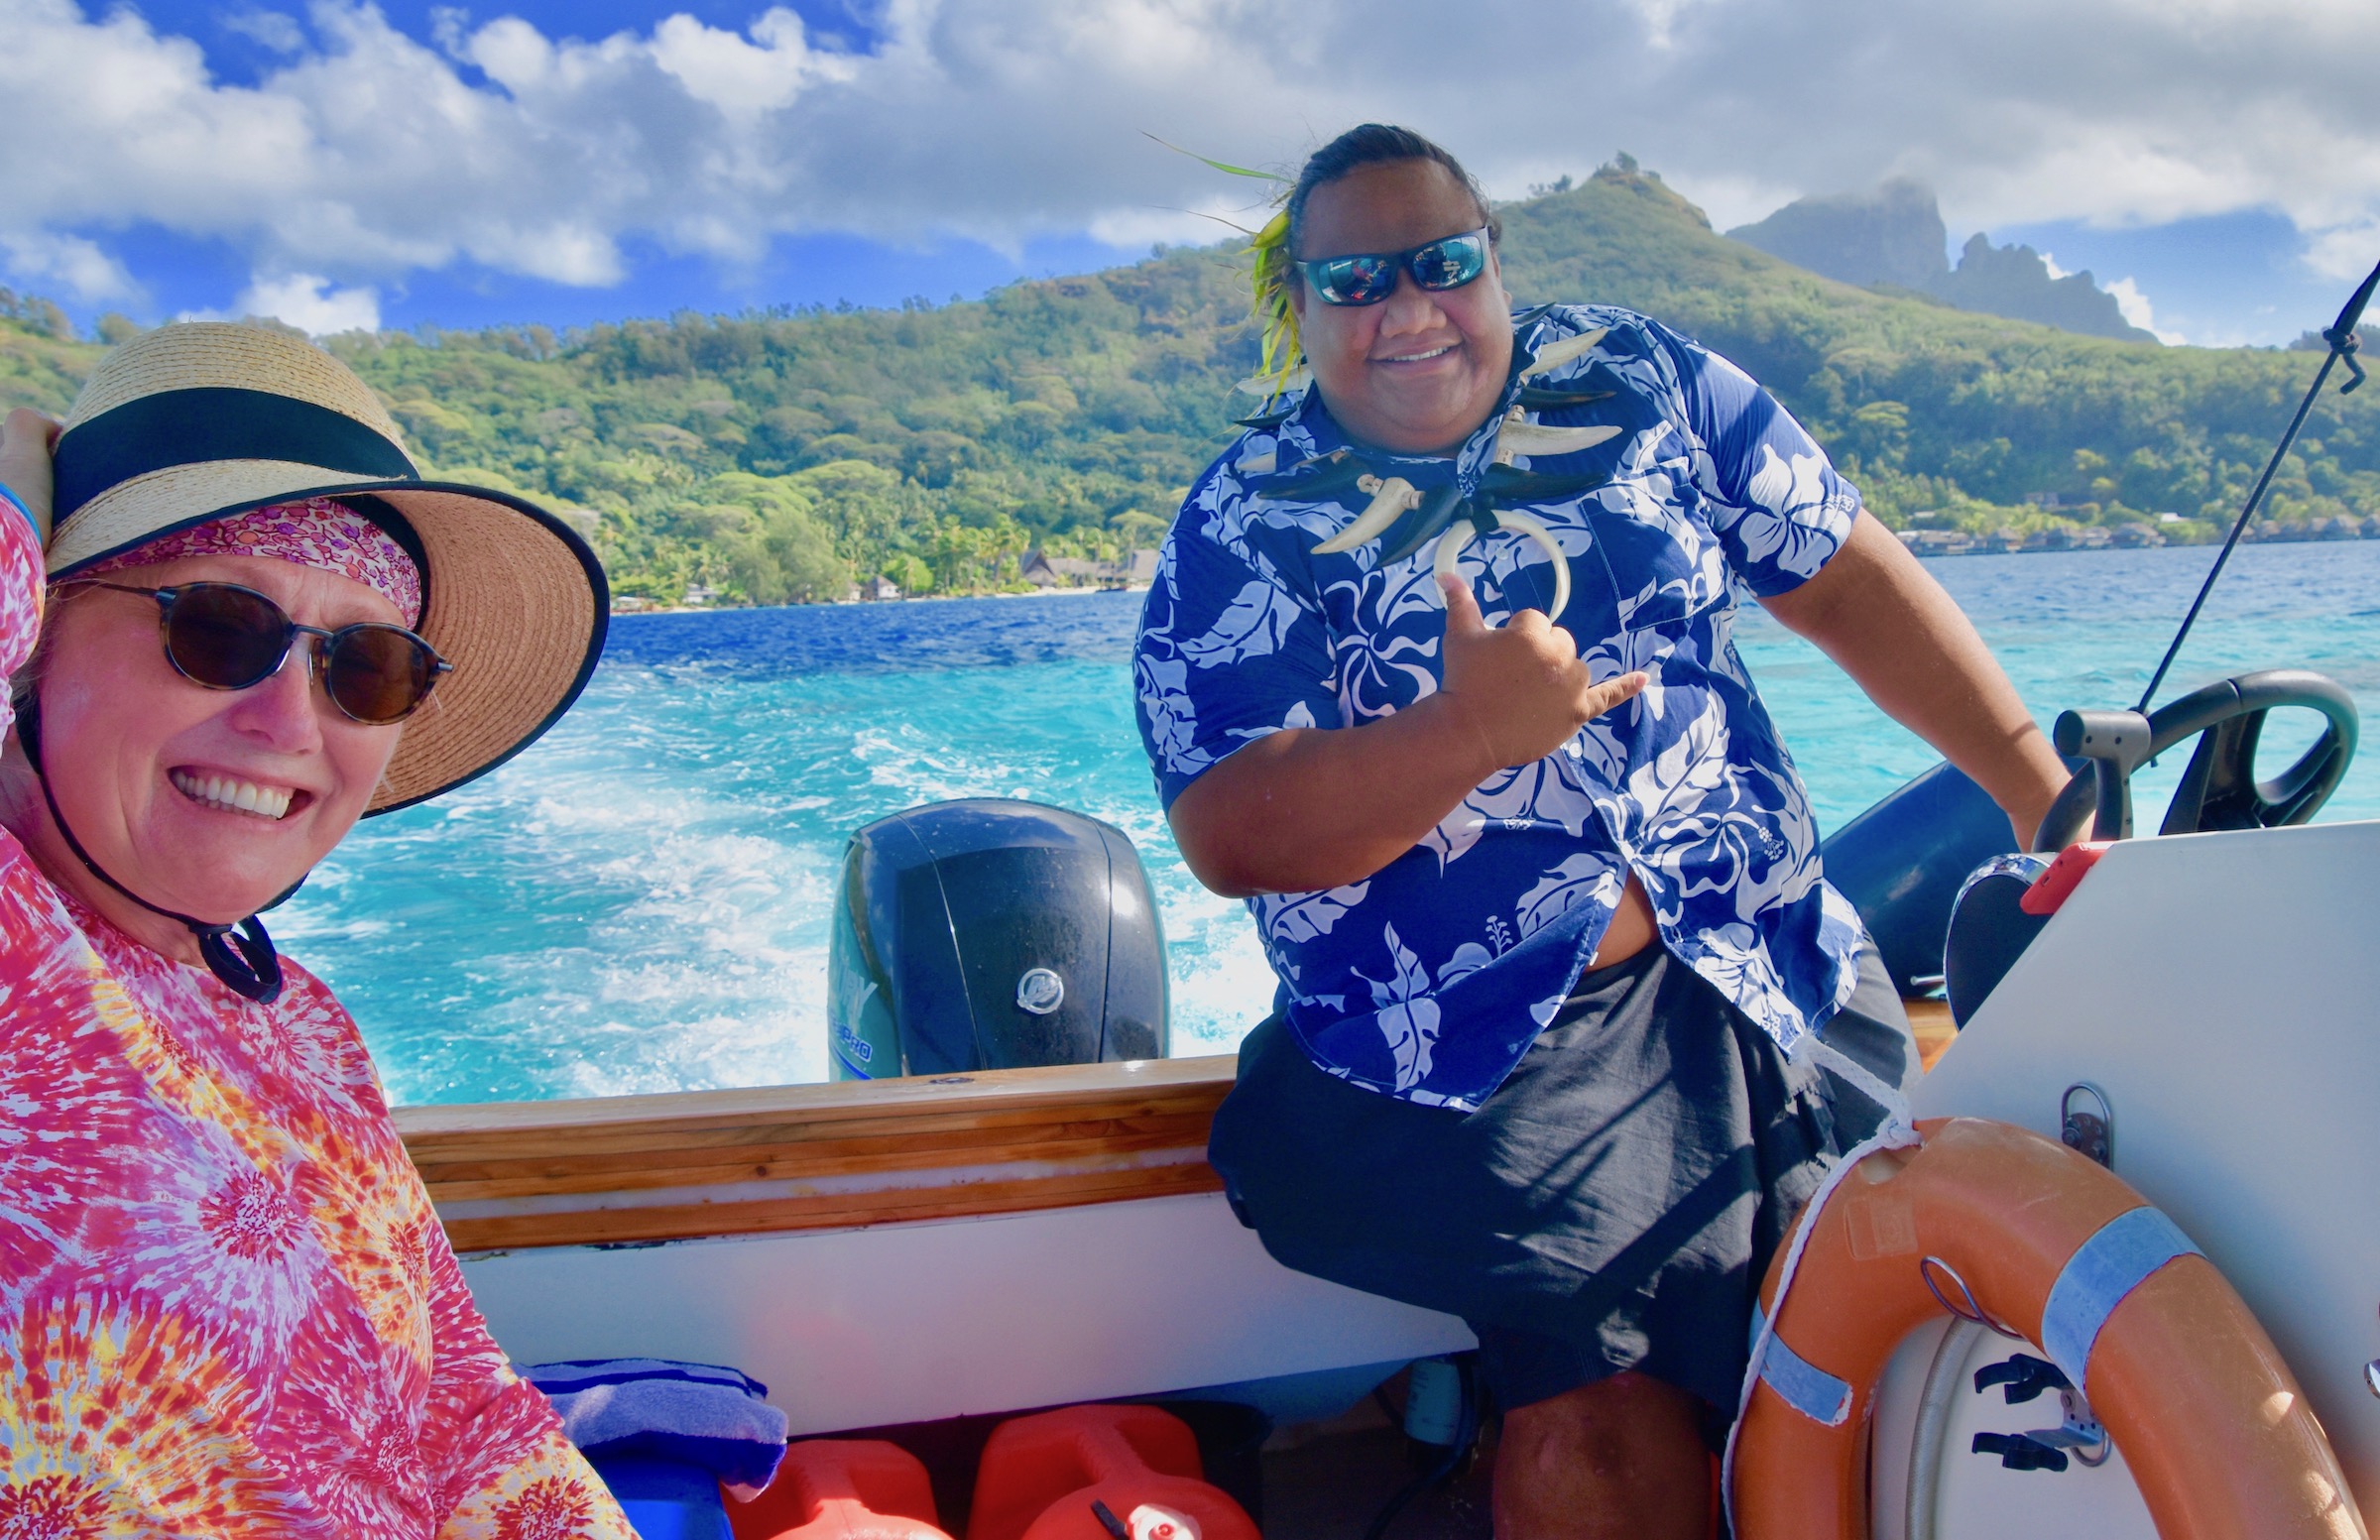 Captain Mike of the Bora Bora boat Trip